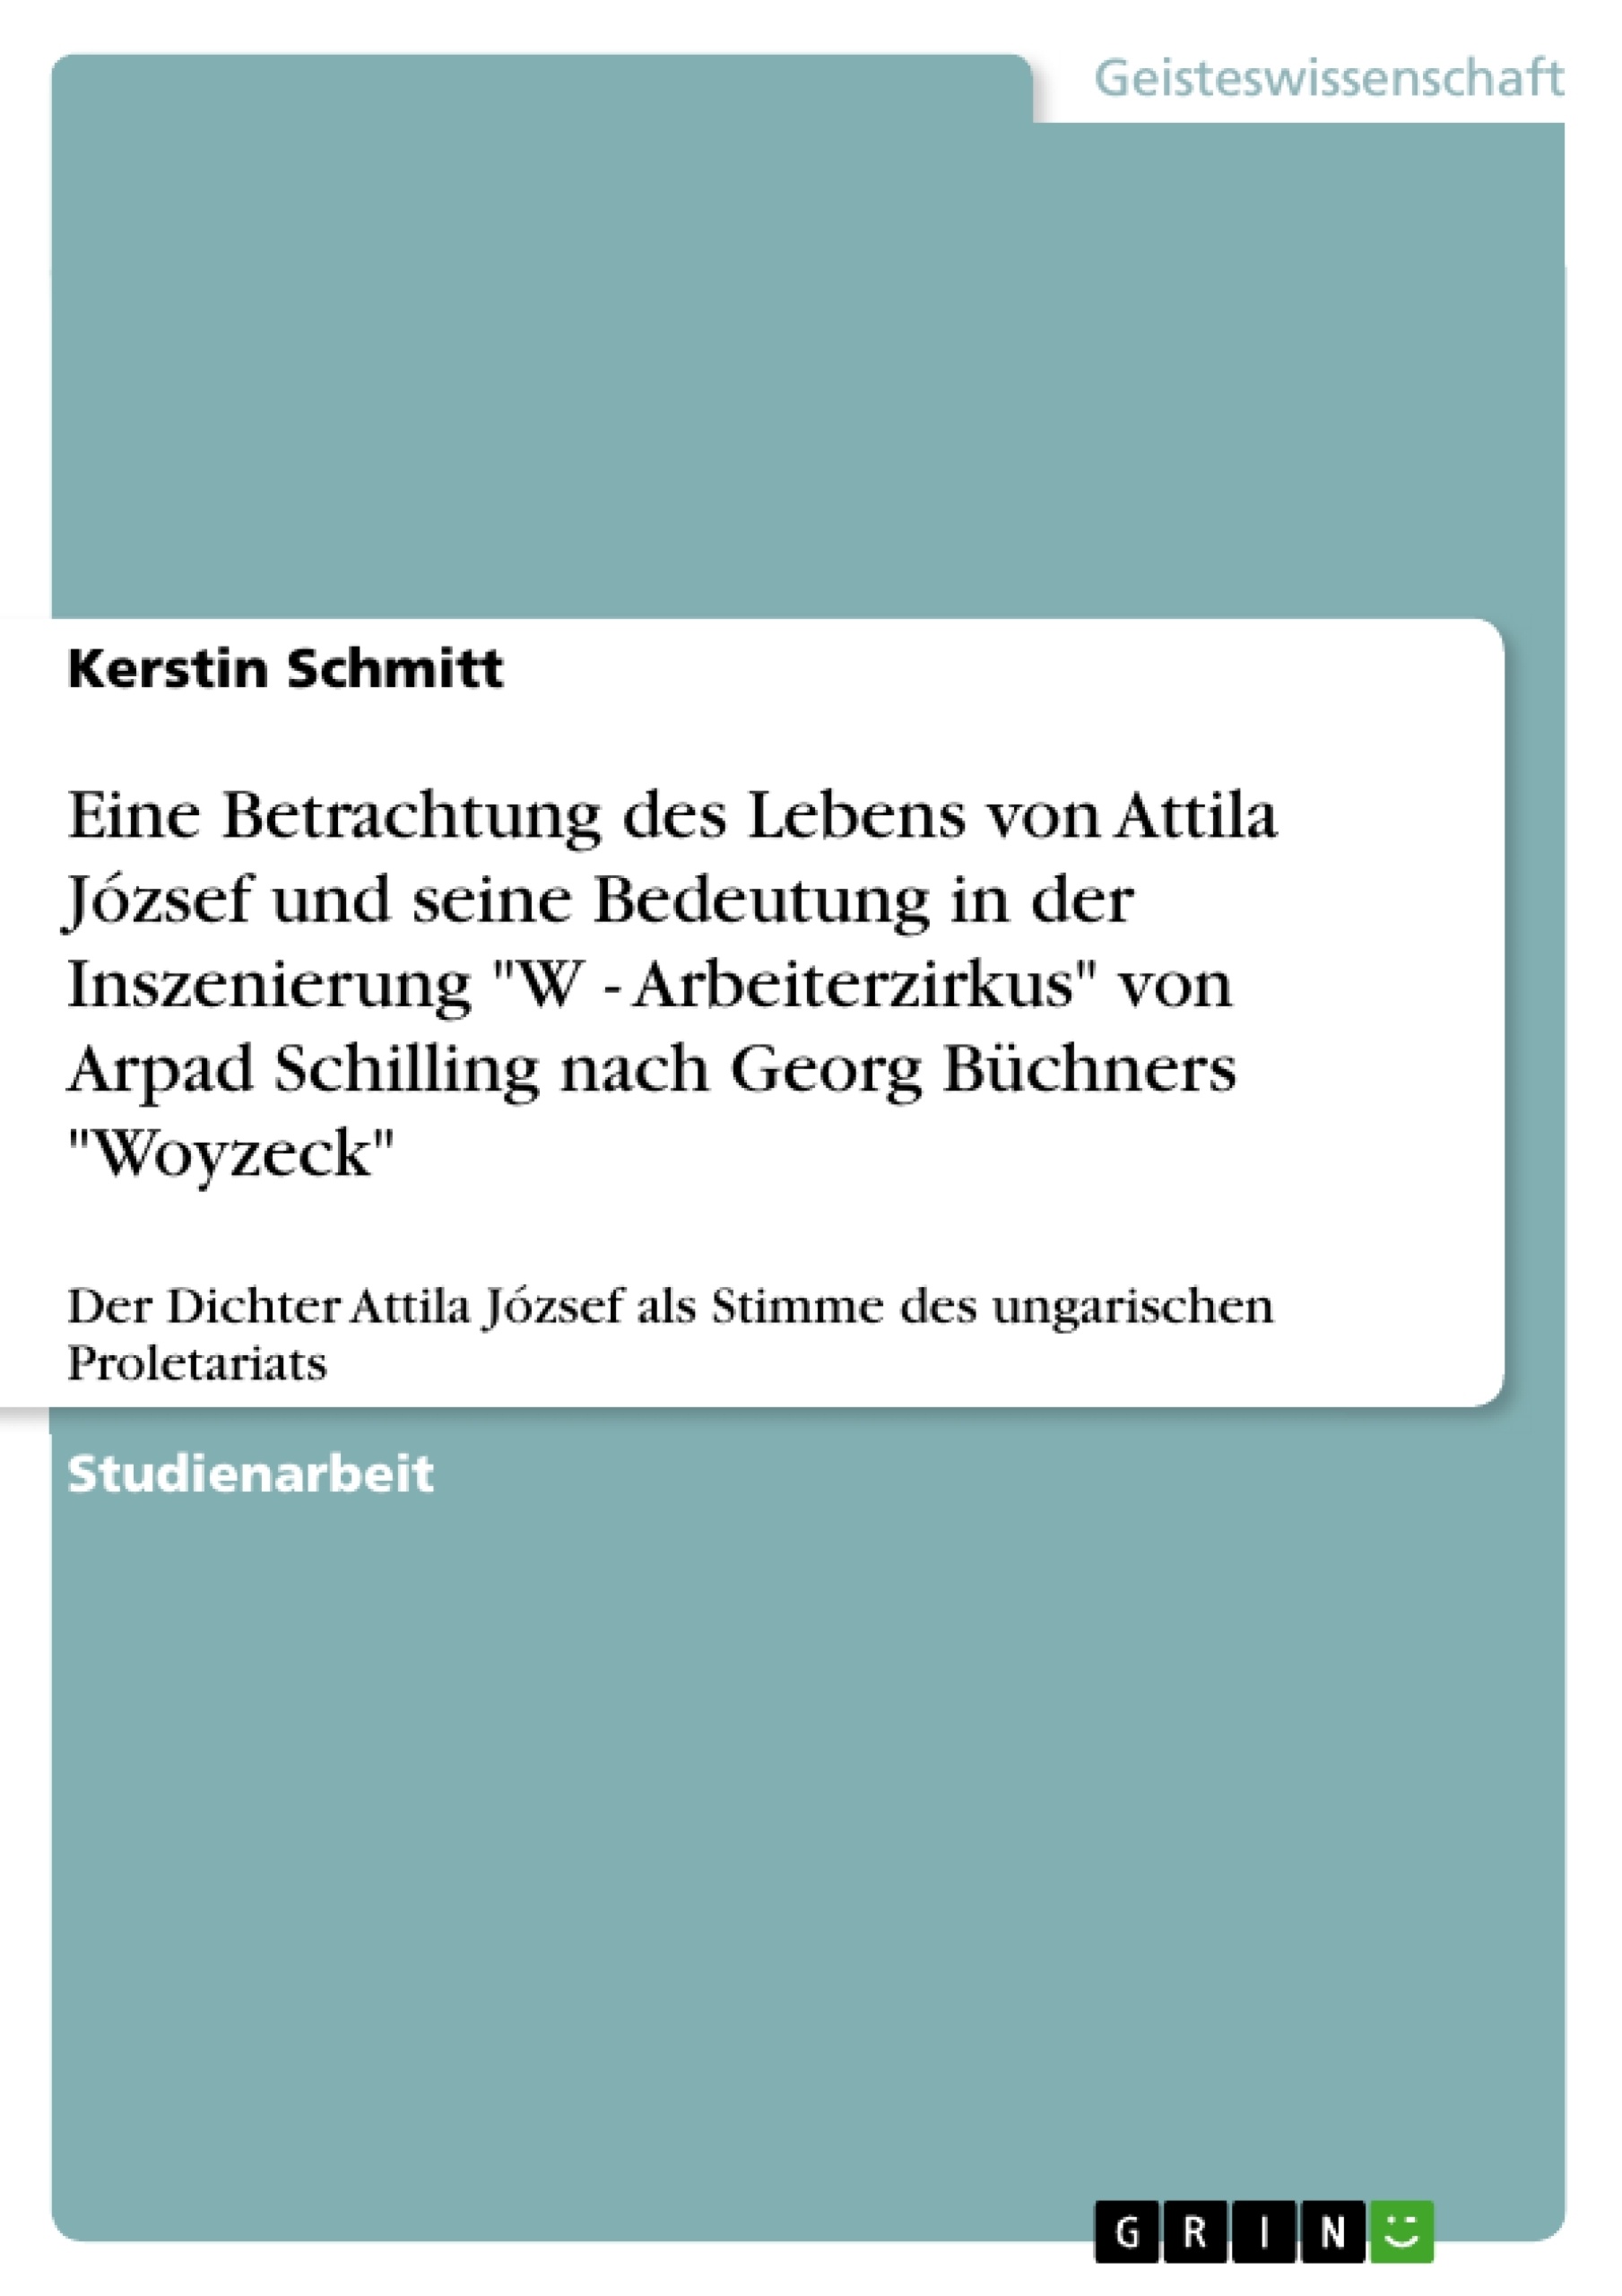 Título: Eine Betrachtung des Lebens von Attila József und seine Bedeutung in der Inszenierung  "W - Arbeiterzirkus" von Arpad Schilling nach Georg Büchners "Woyzeck"